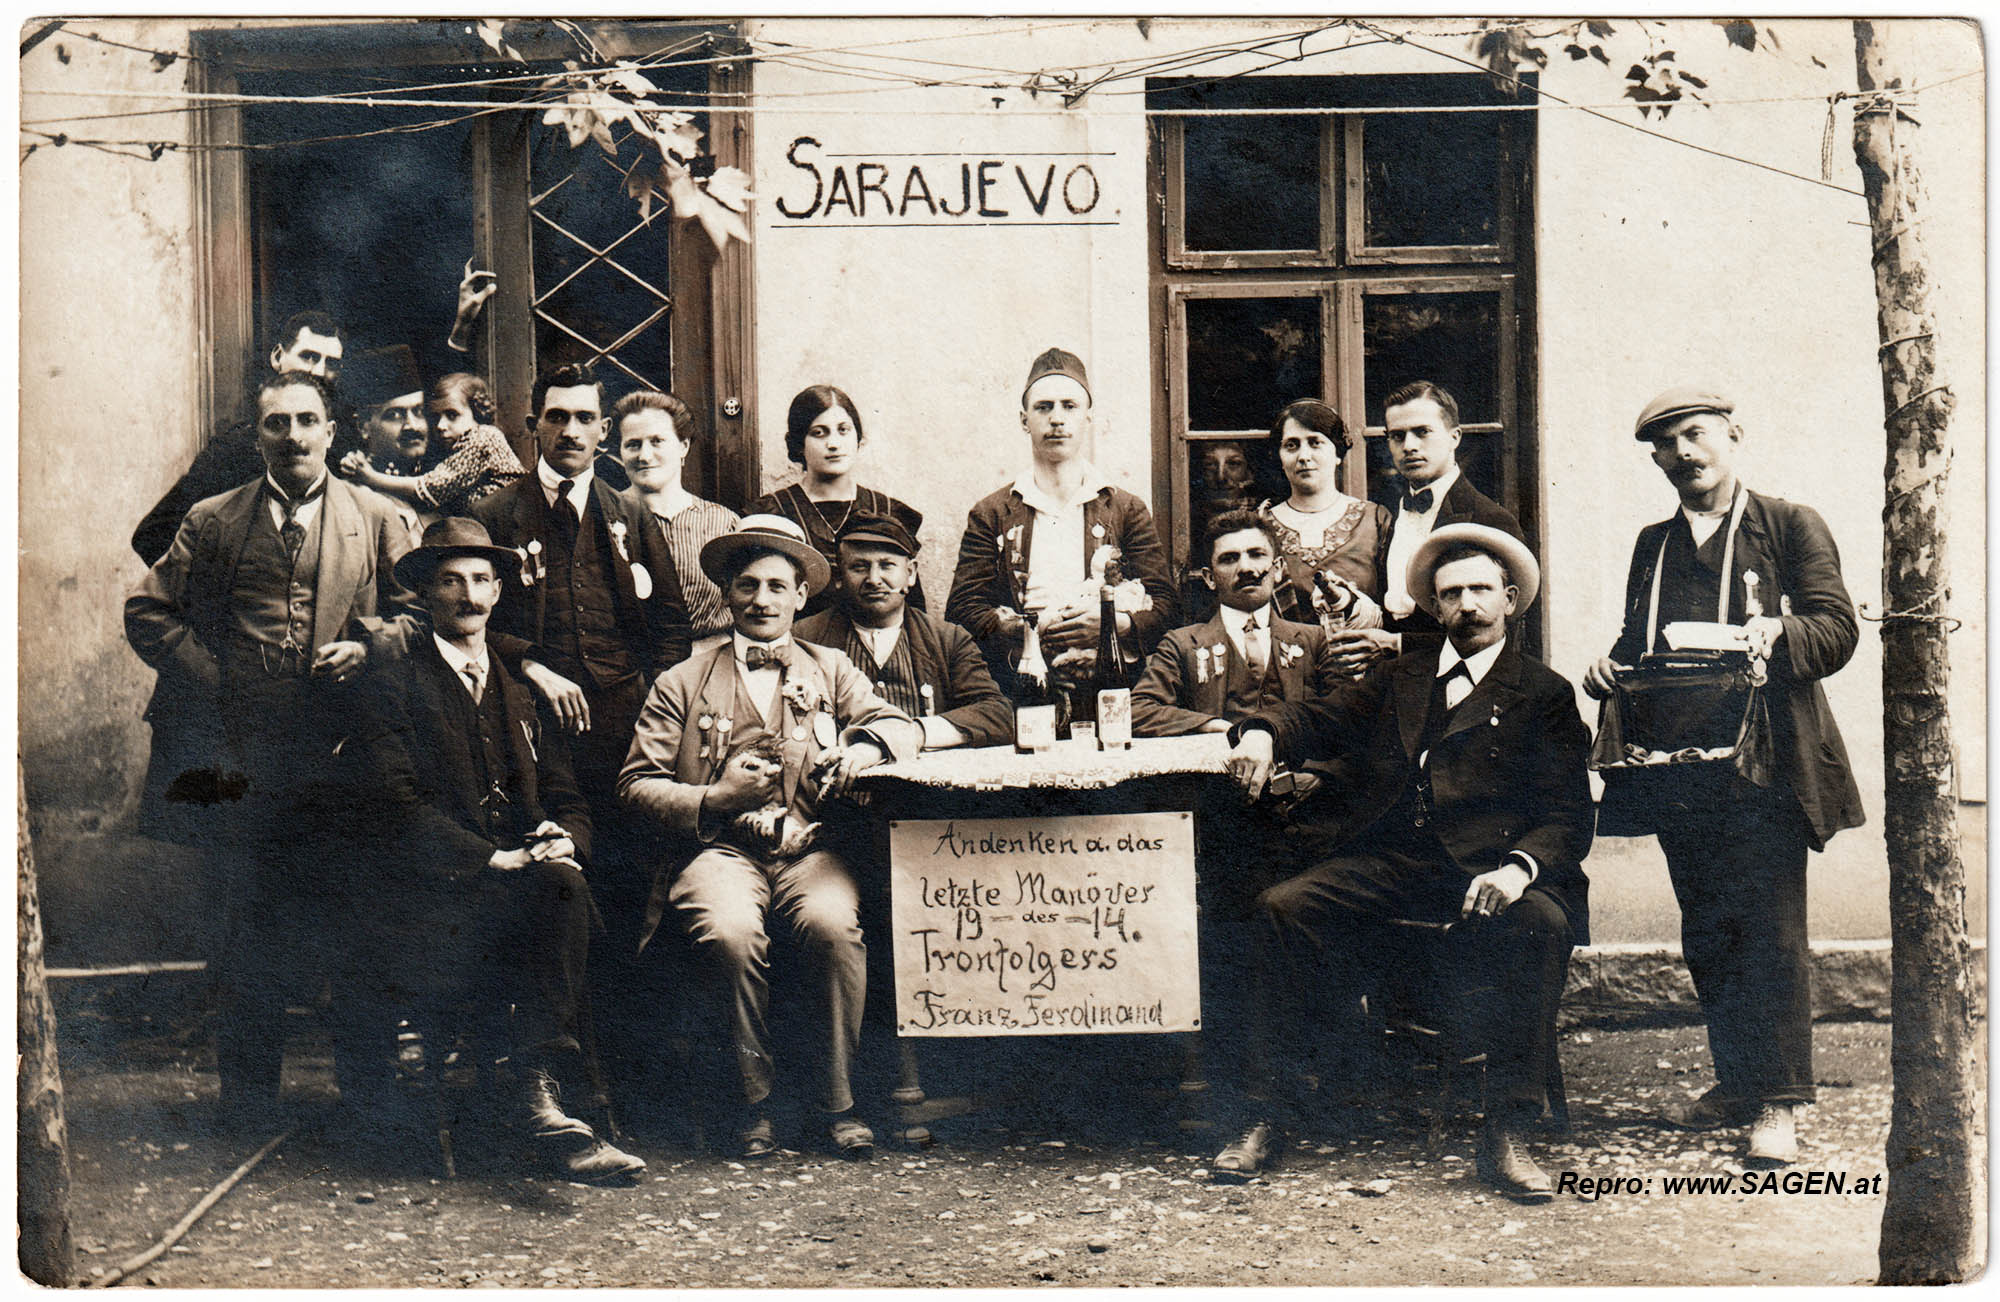 Fest Andenken Thronfolger Franz Ferdinand Sarajevo 1914